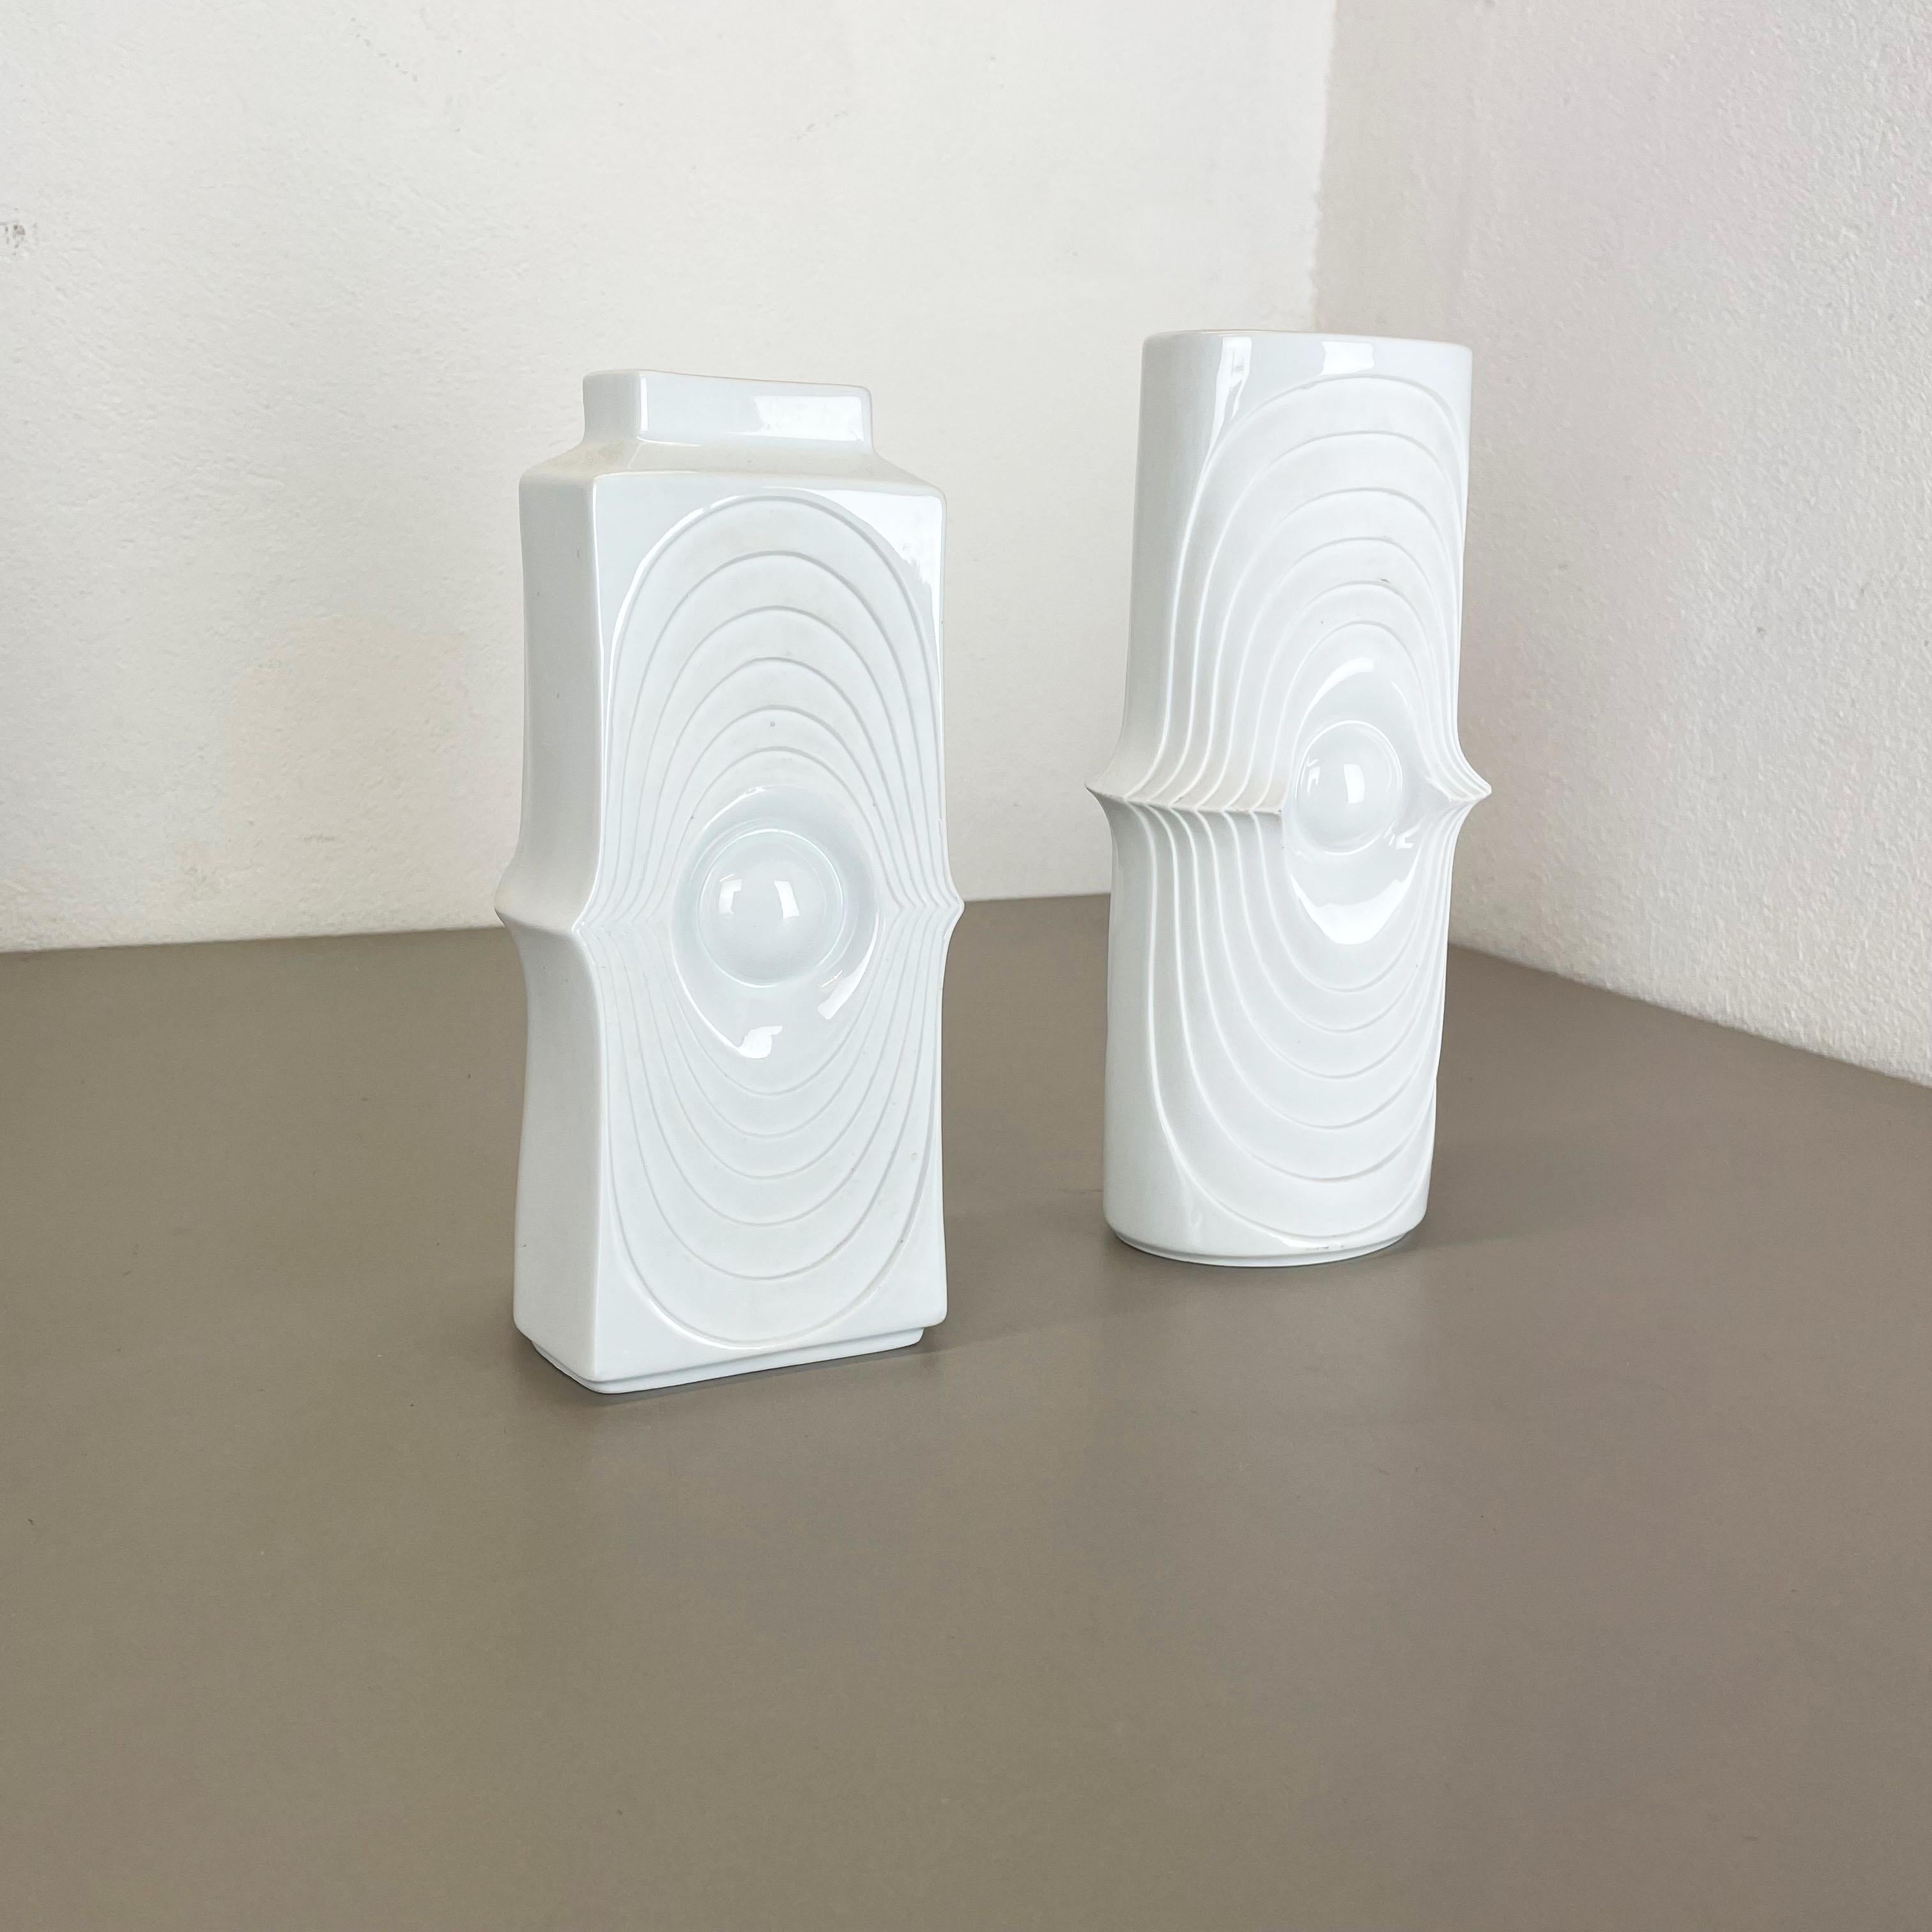 Mid-Century Modern Set of 2 Original Porcelain OP Art Vase Made by Royal Bavaria KPM Germany, 1970s For Sale